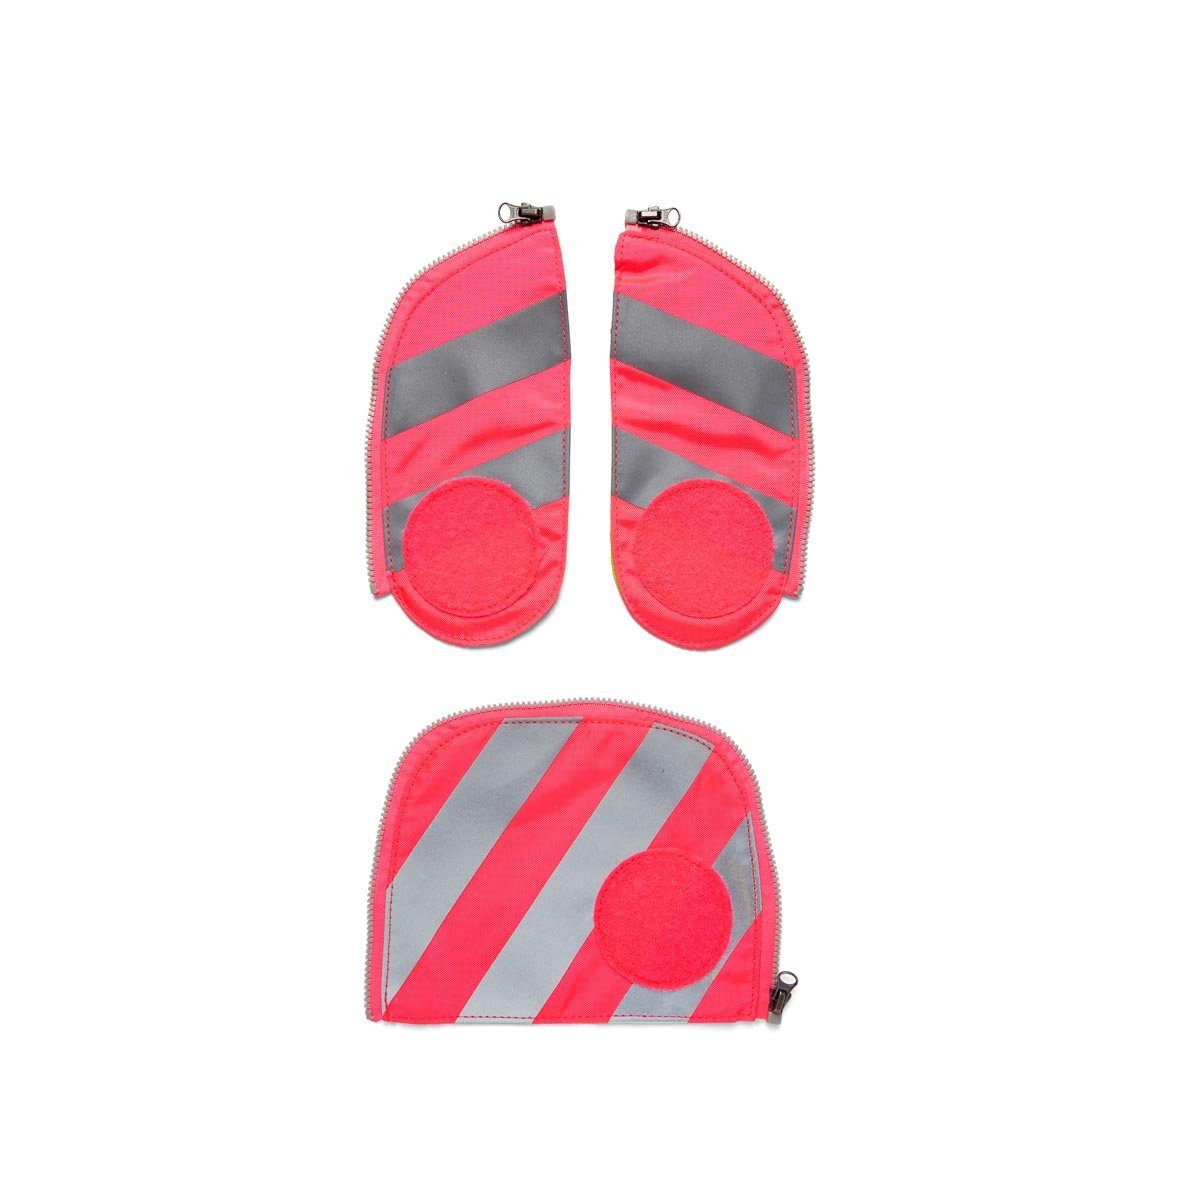 Schulranzen Reflektorstreifen, 2019 ergobag für Schultaschenmodelle alle Pink mit ab Fluo 001-511 Sicherheitsset Zip-Set